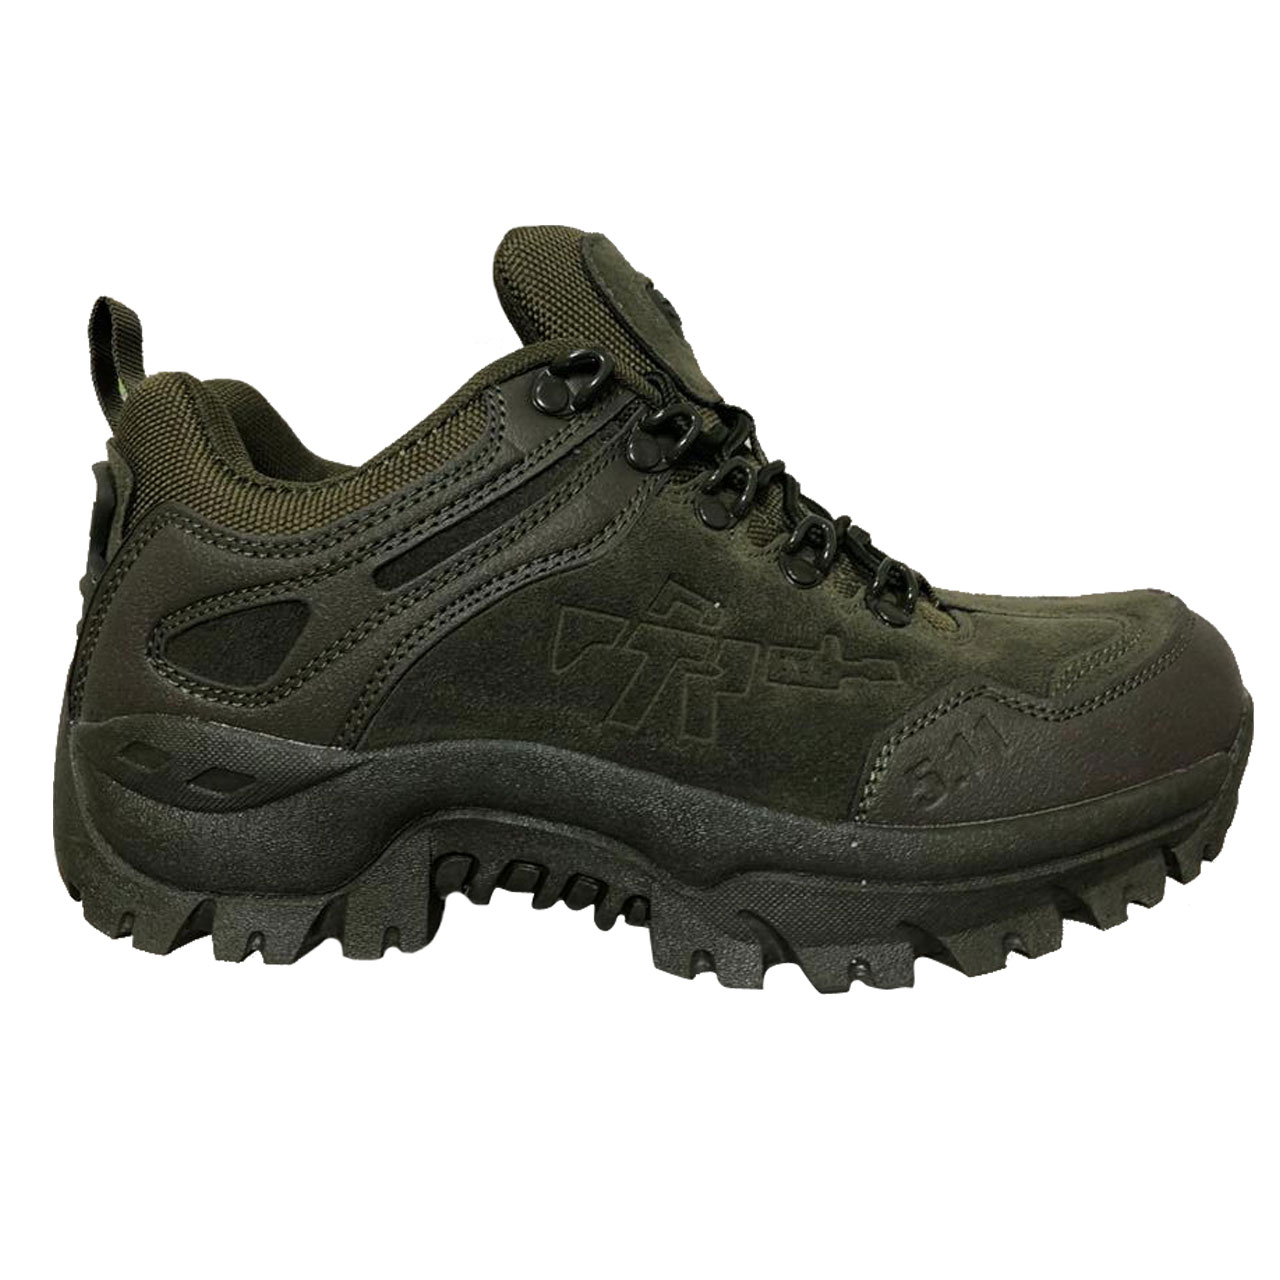 کفش کوهنوردی مردانه 5:11 کد R1 رنگ سبز